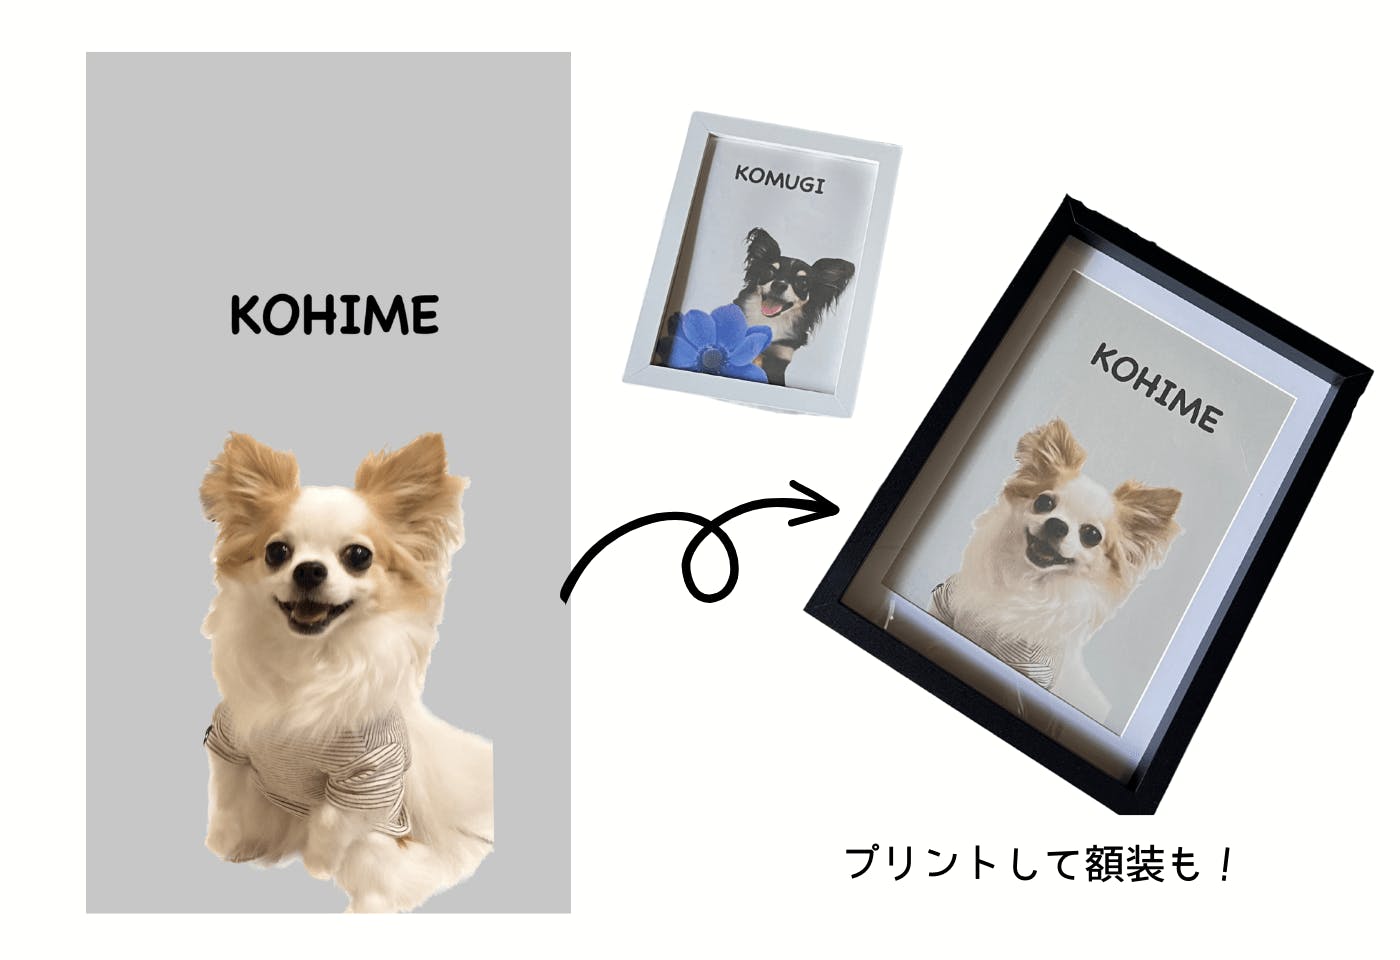 iPhoneの画像切り抜き機能を使った愛犬の絵画風デザイン